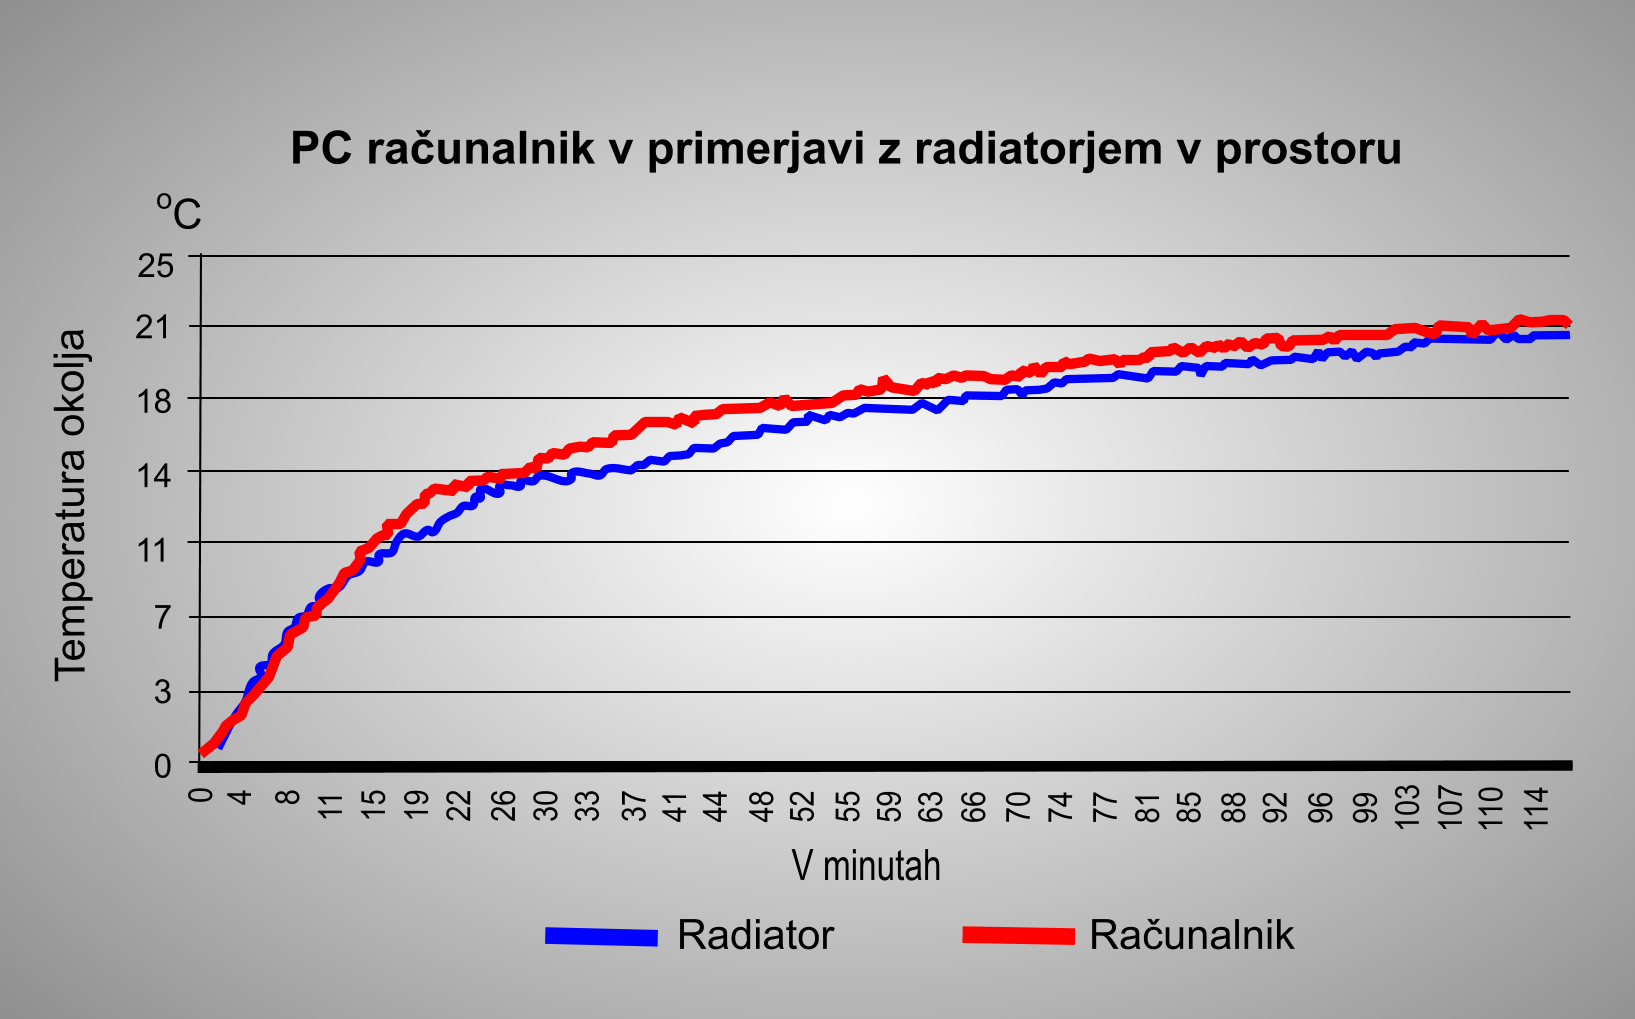 Krivulji na grafu kažeta razliko med ogrevanjem z radiatorjem in računalnikom